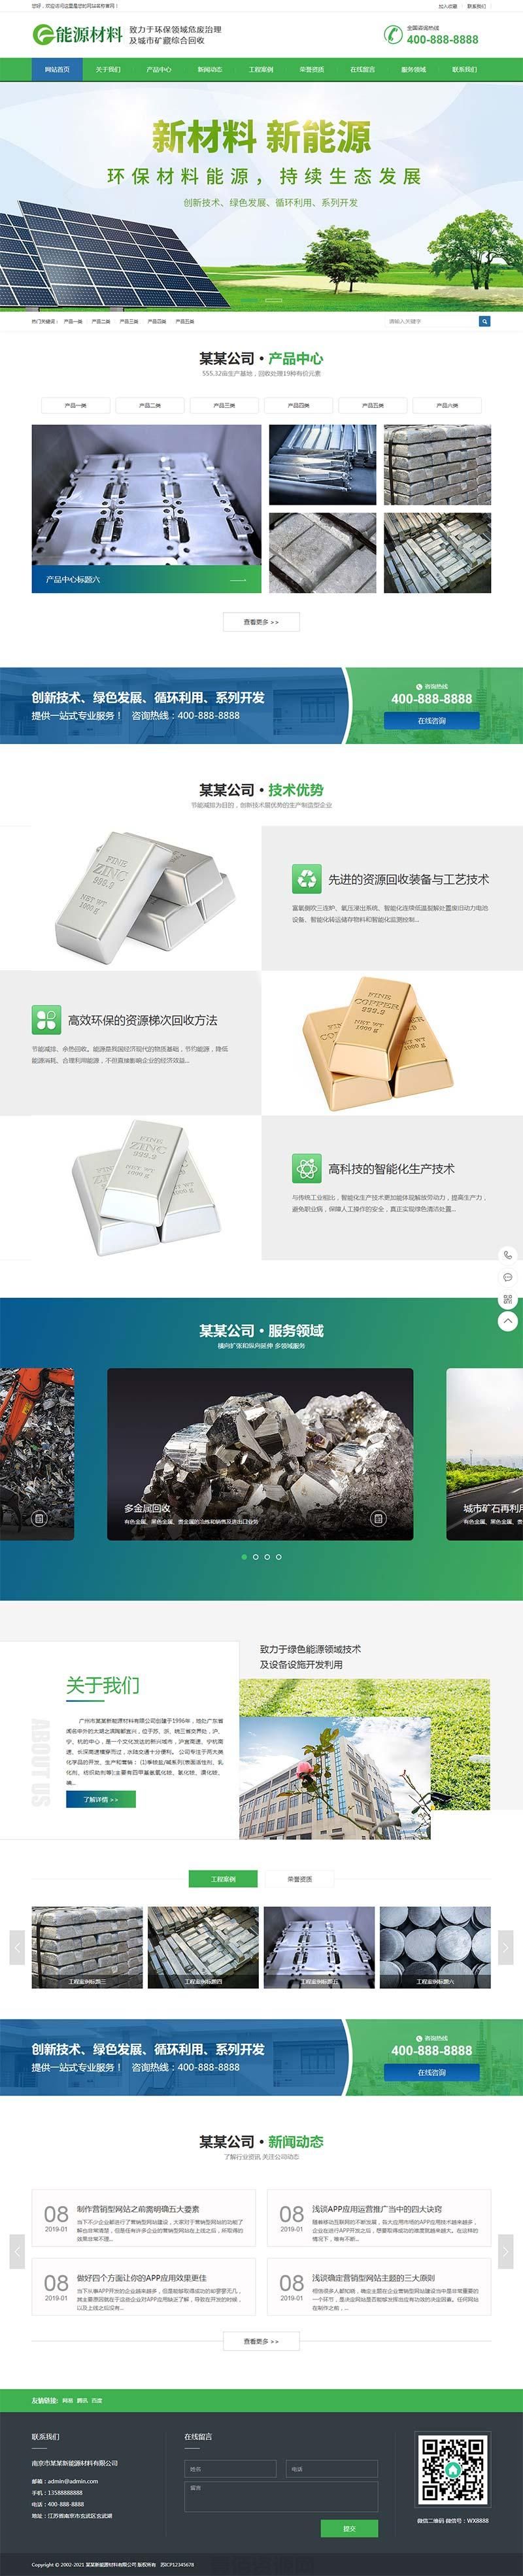 (带手机版数据同步)环保新材料新能源类网站织梦模板 绿色环保企业营销型网站模板下载(图1)